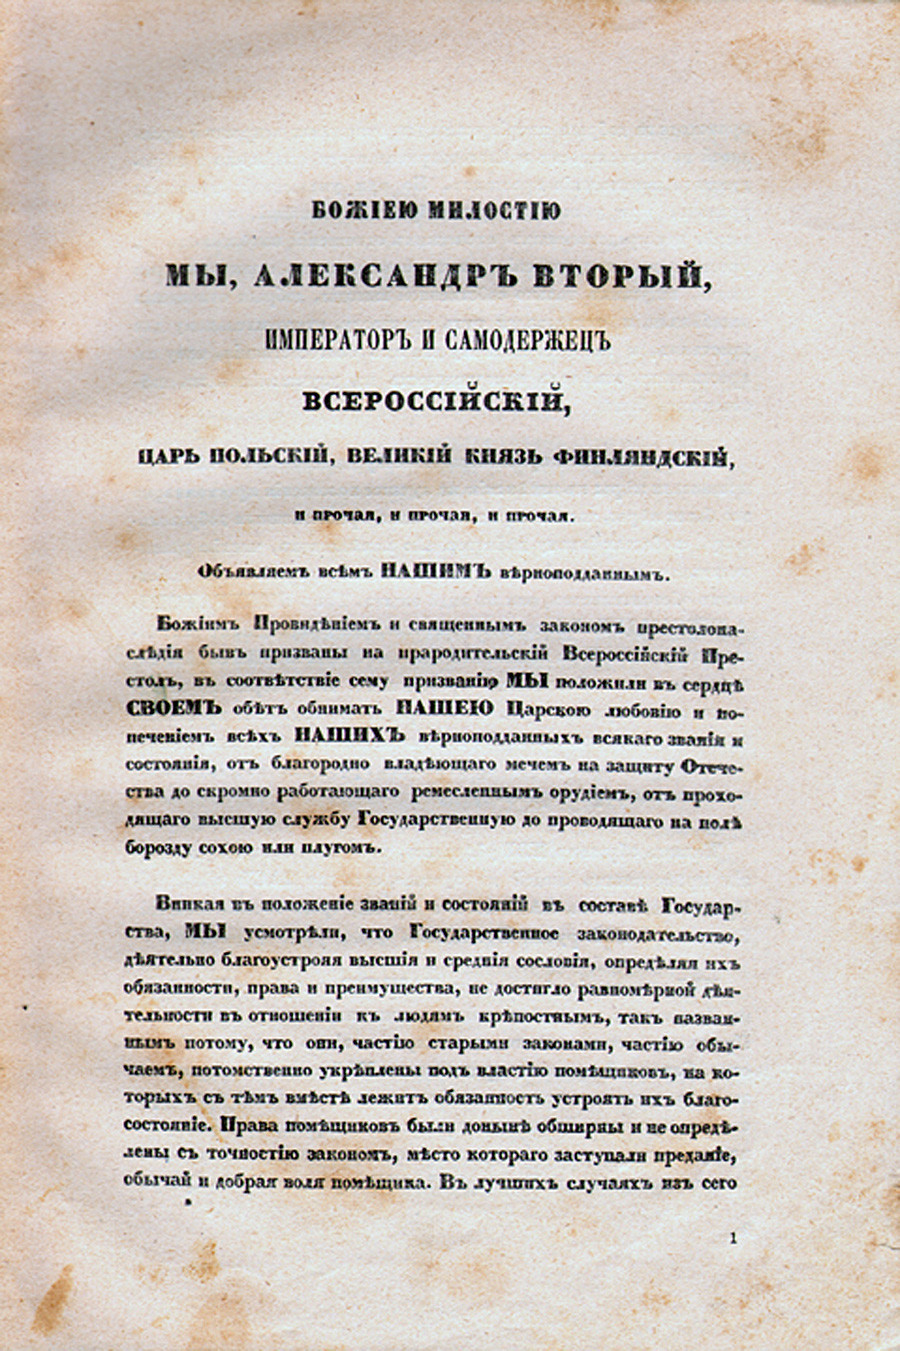 Prva stran manifesta z 19. februarja 1861

